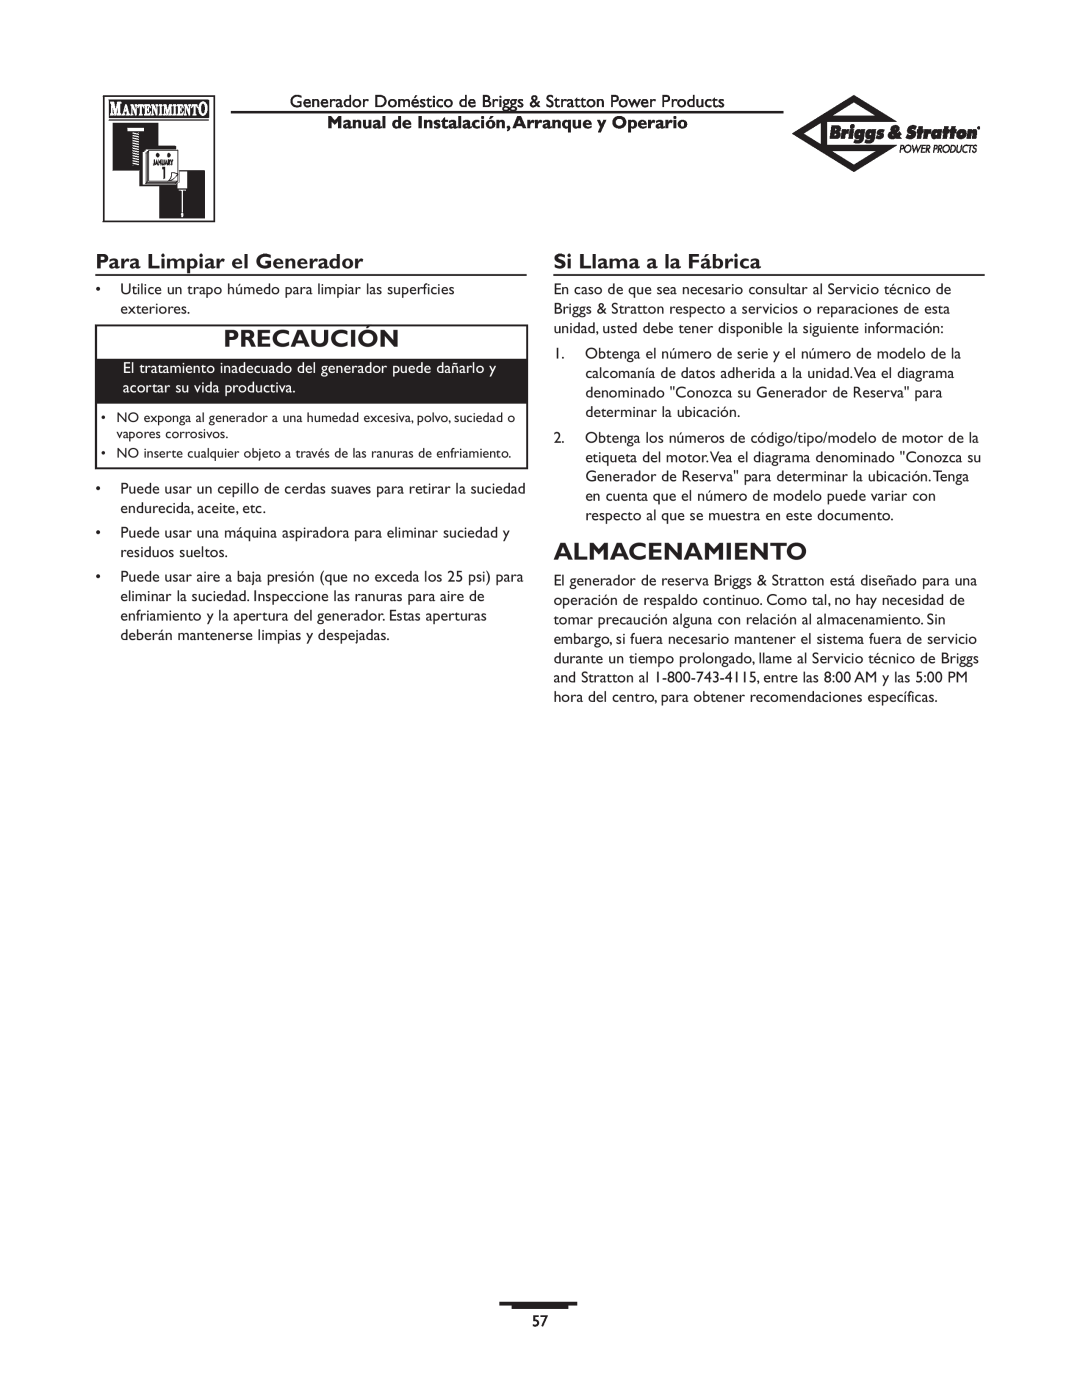 Briggs & Stratton 01897-0 manual Almacenamiento, Para Limpiar el Generador, Si Llama a la Fábrica, Precaución 